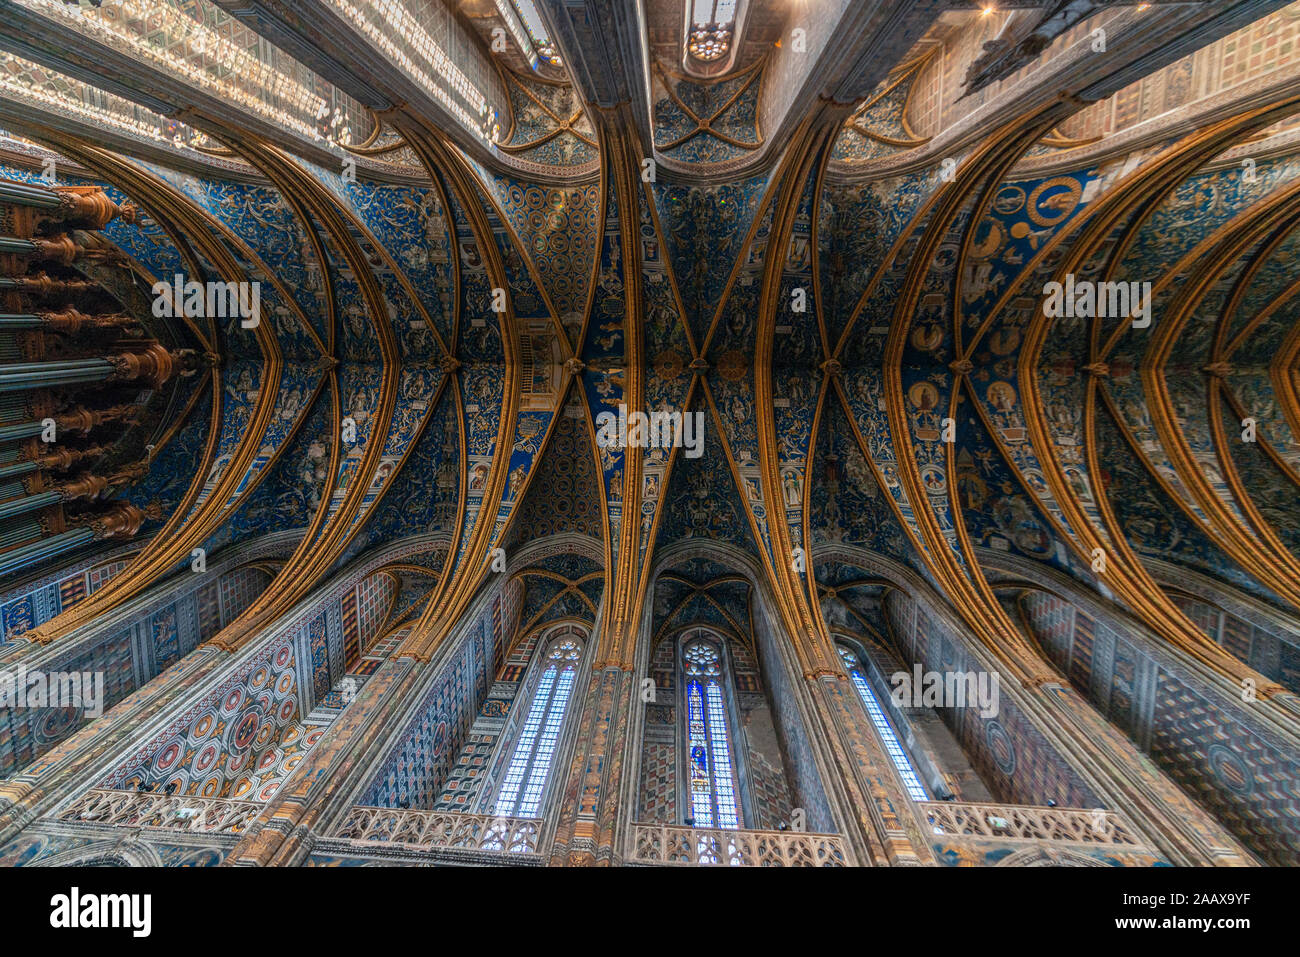 Détail du plafond de St Cecile, Cathadral à Albi, France. Il s'agissait d'un site associé au 13e siècle les hérésies cathares. Banque D'Images